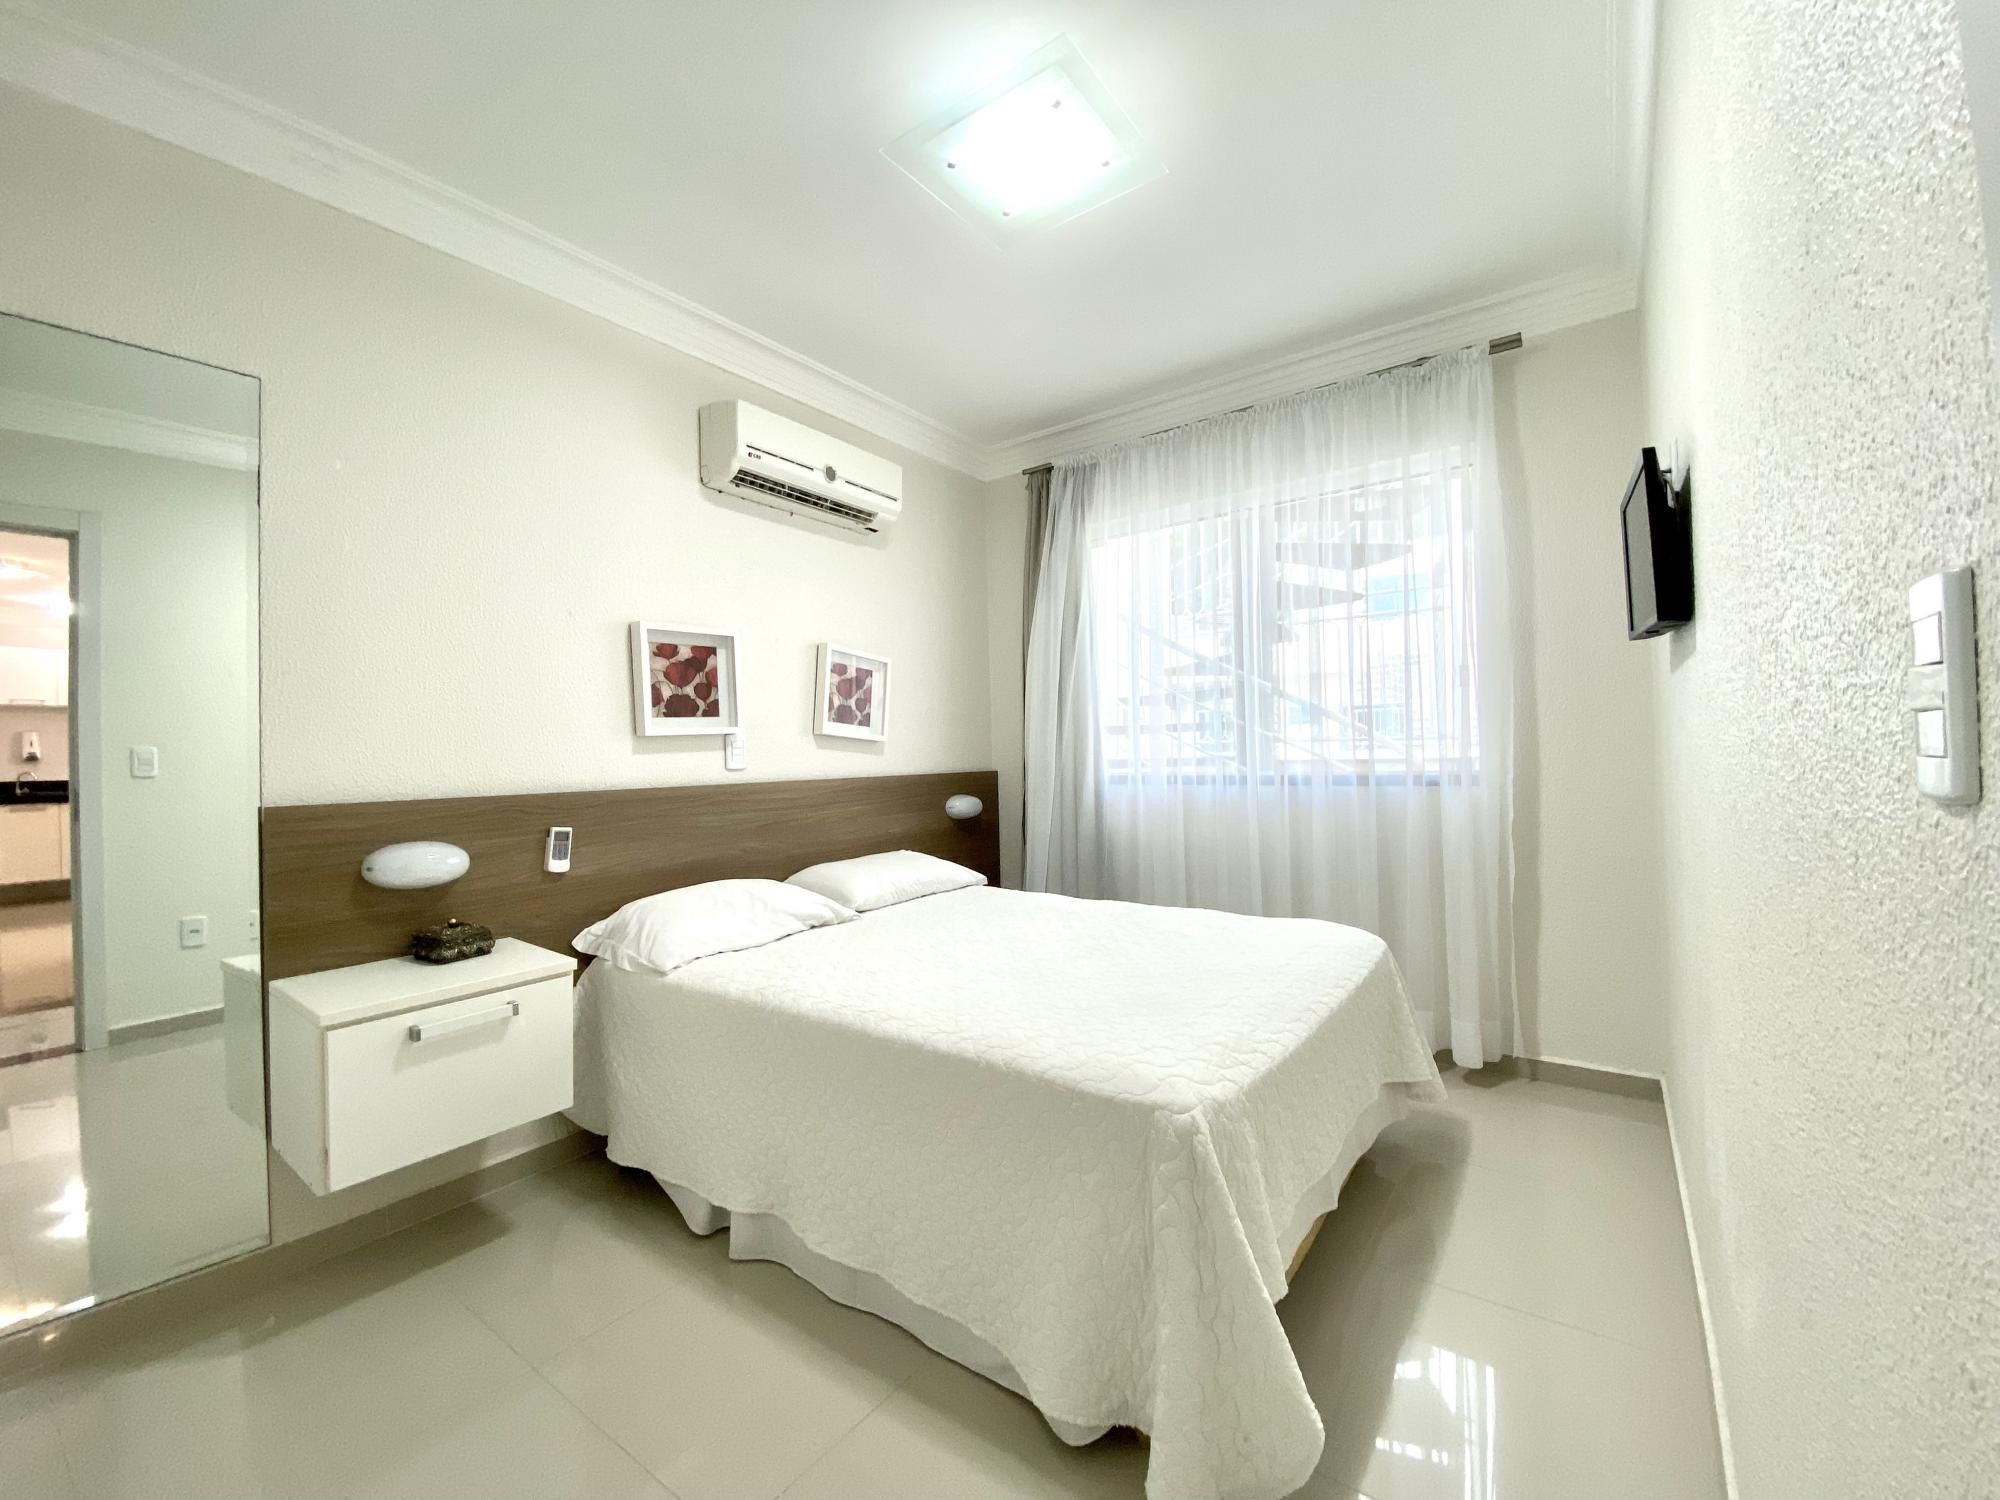 Cobertura com 2 Dormitórios para alugar, 85 m² valor à combinar